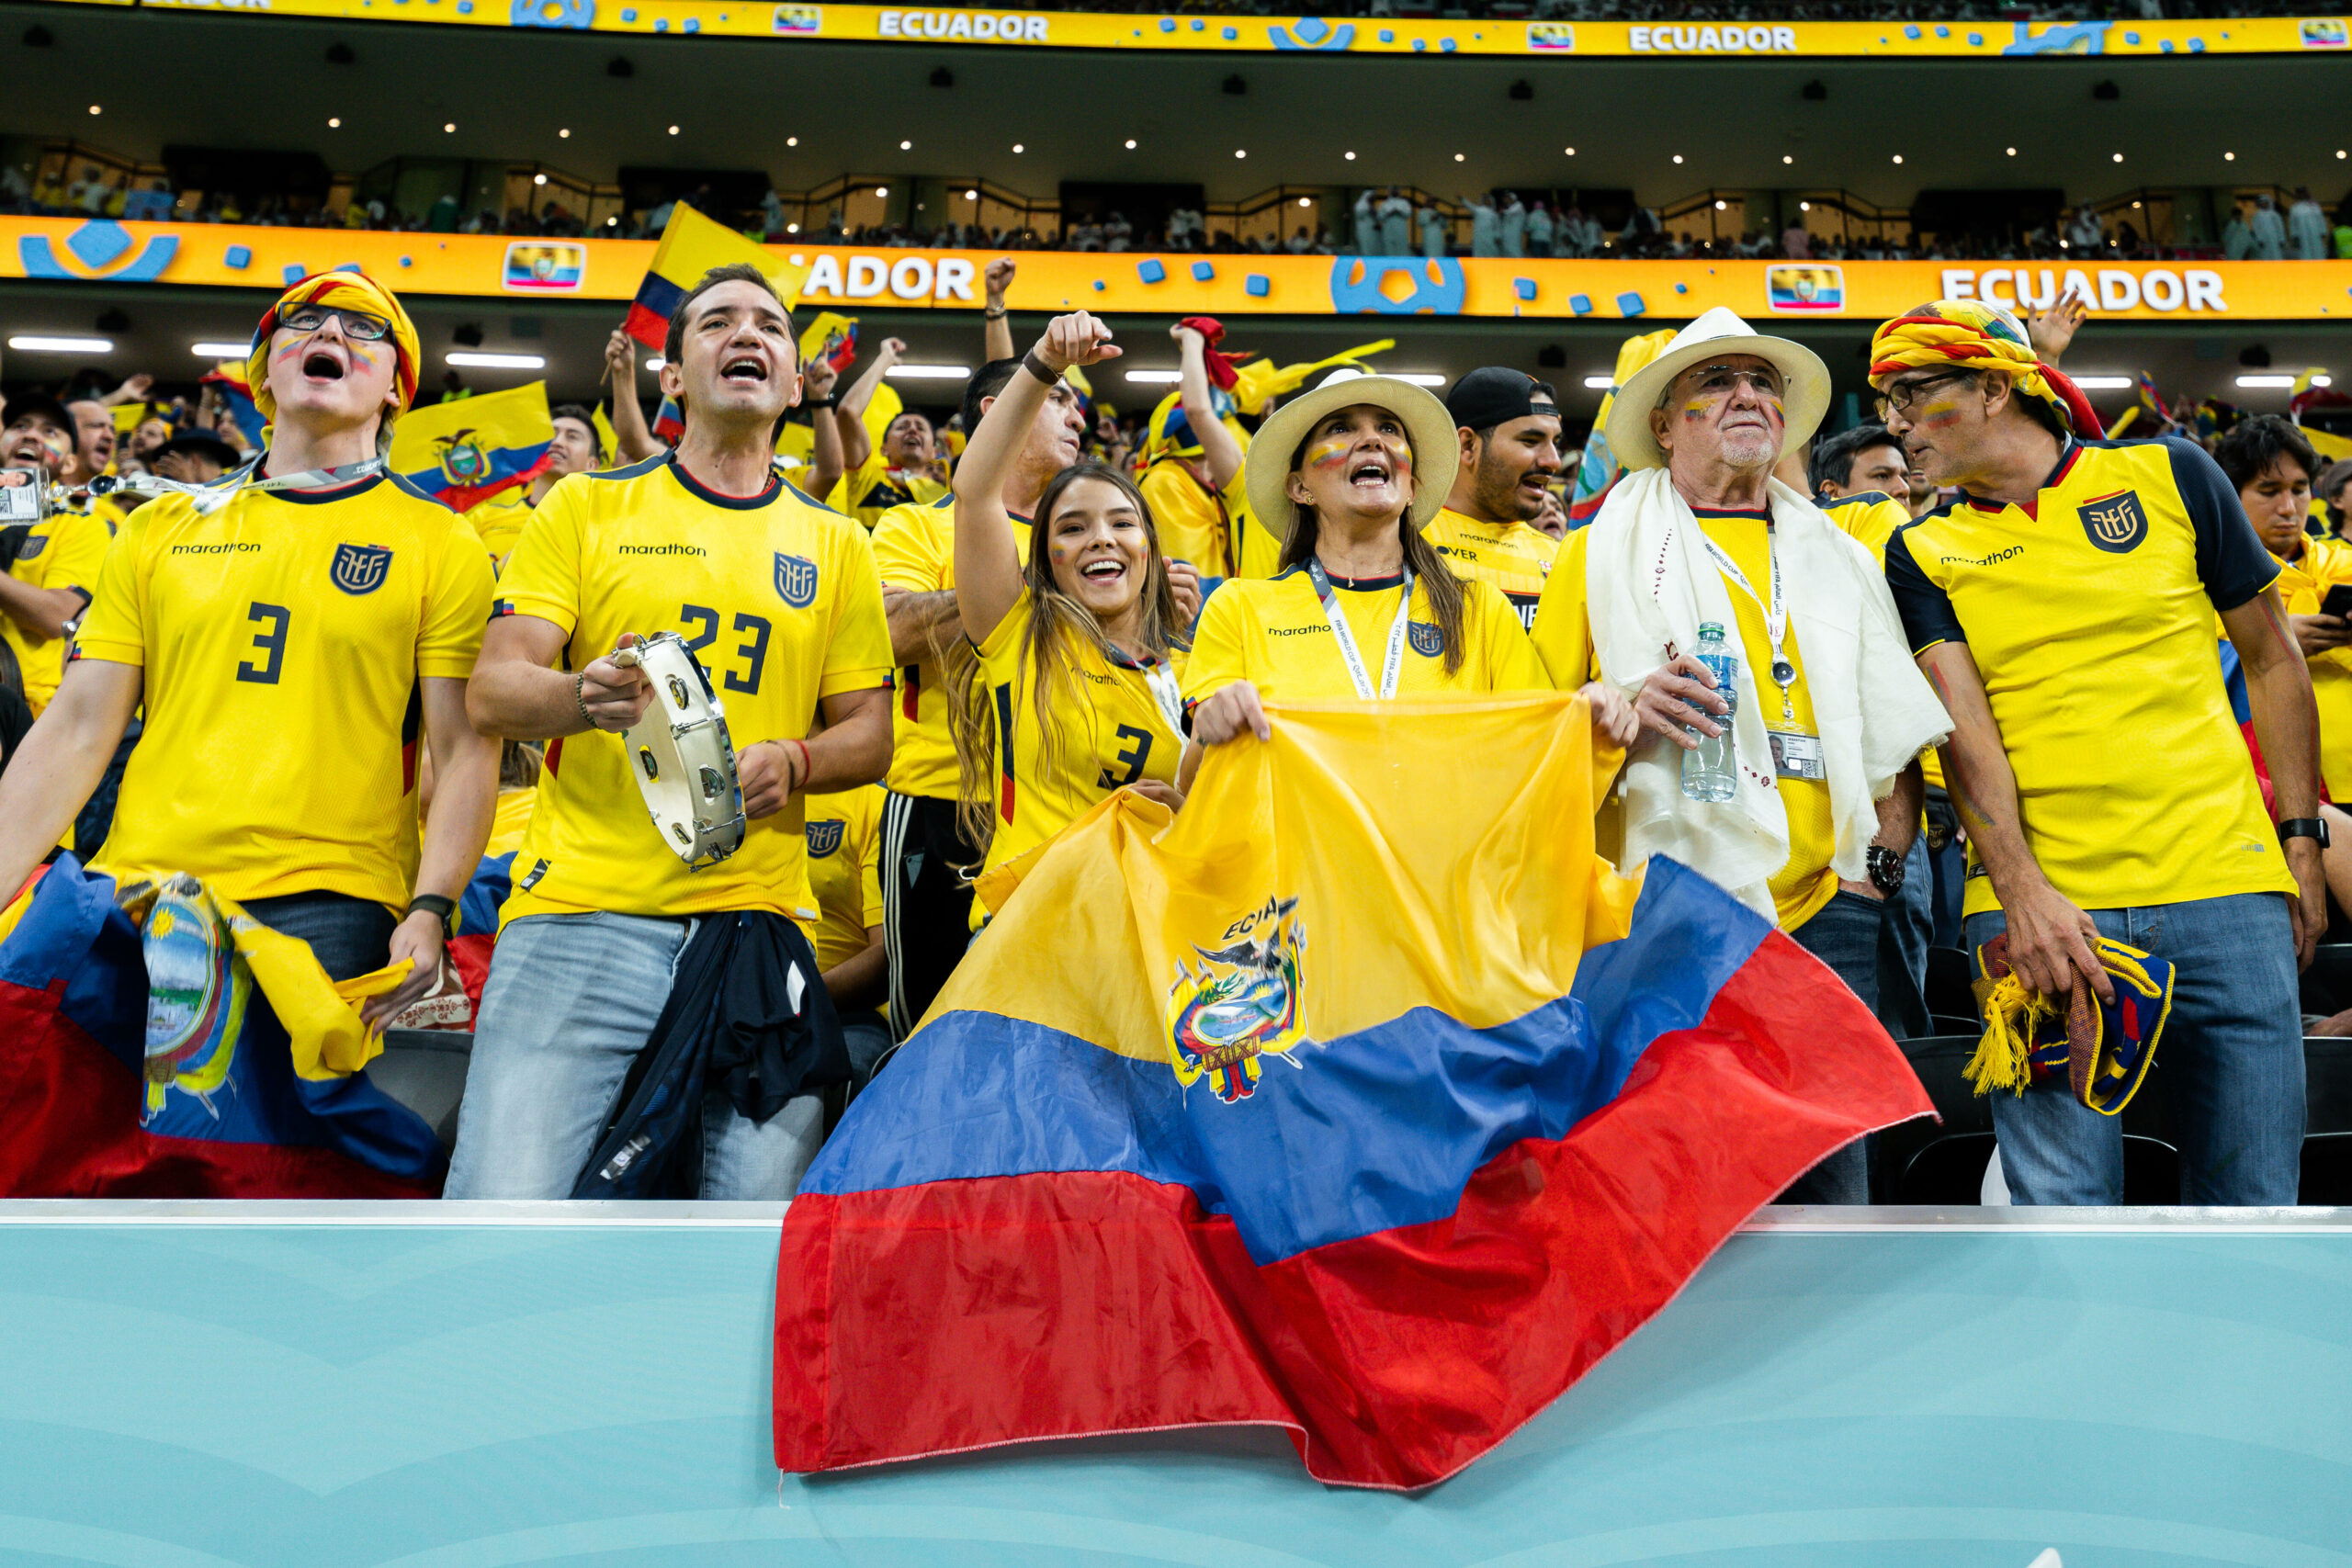 Ecuador-Fans bei der WM 2022